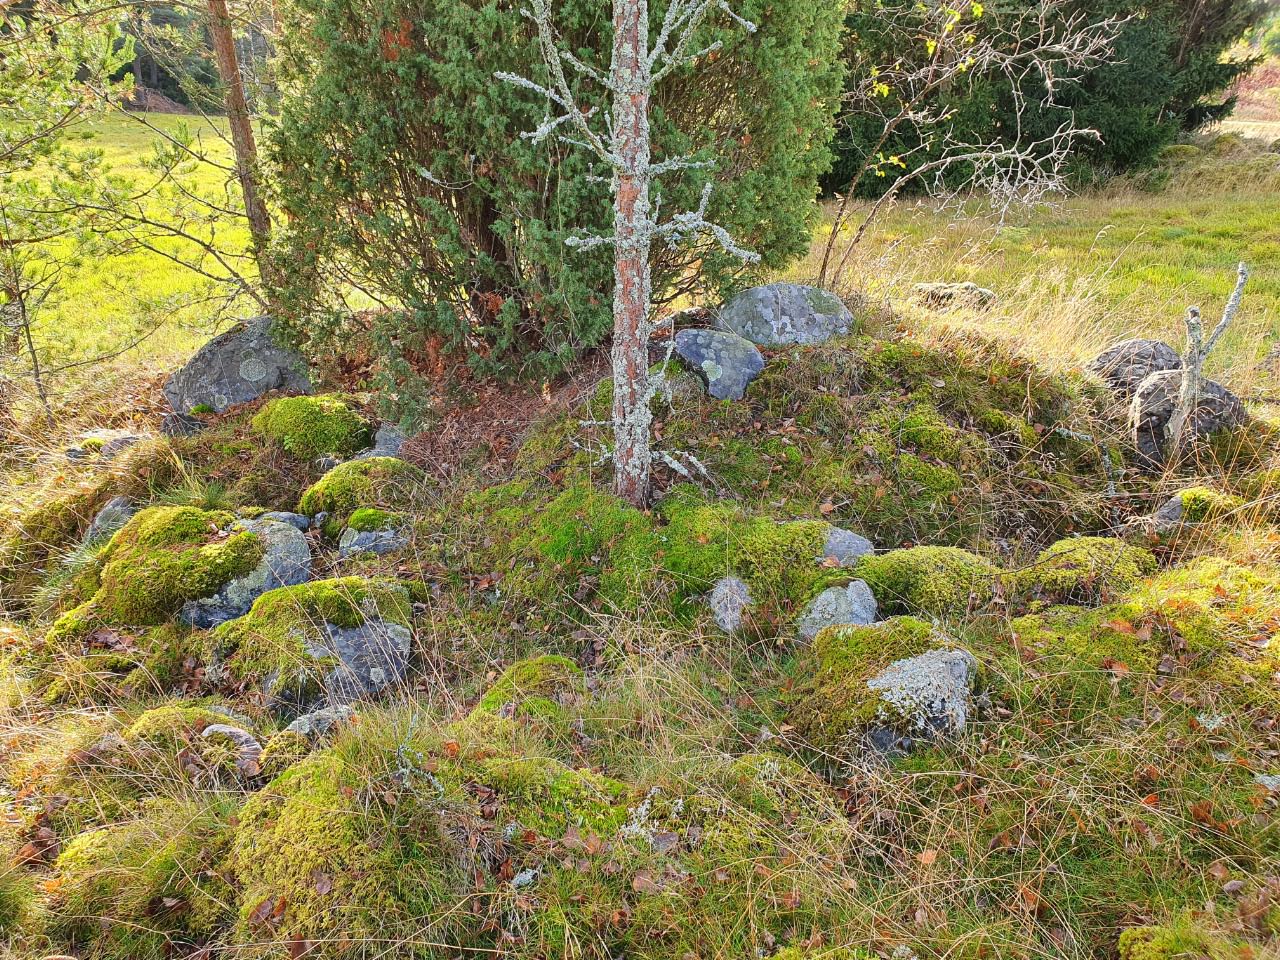 Kuva: Inkoo, Norrby. Peltosaarekkeilla on säilynyt kivirakenteita, jotka ovat tulkittavissa pääosin peltoraunioiksi. Sari Mäntylä-Asplund 14.10.2020